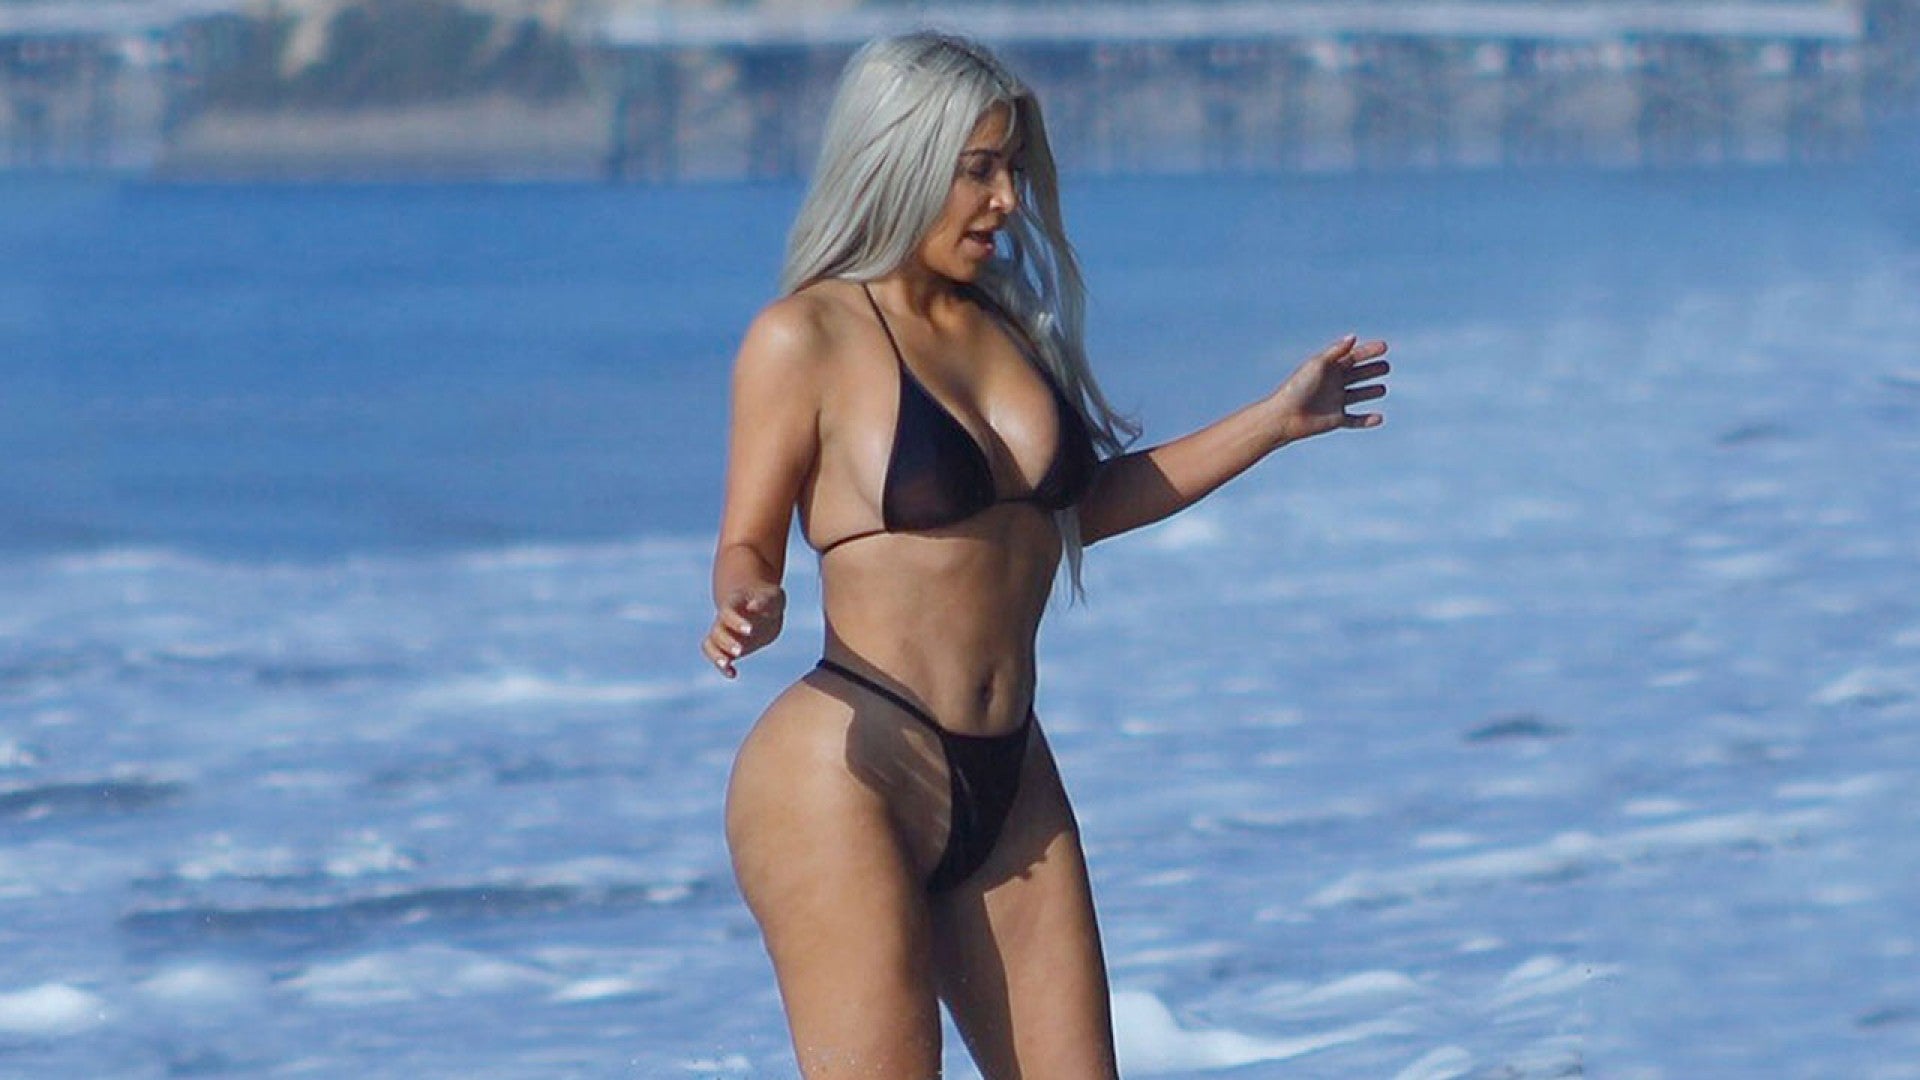 Kim Kardashian Rocks Itty Bitty, Butt-Baring Thong Bikini on the Beach